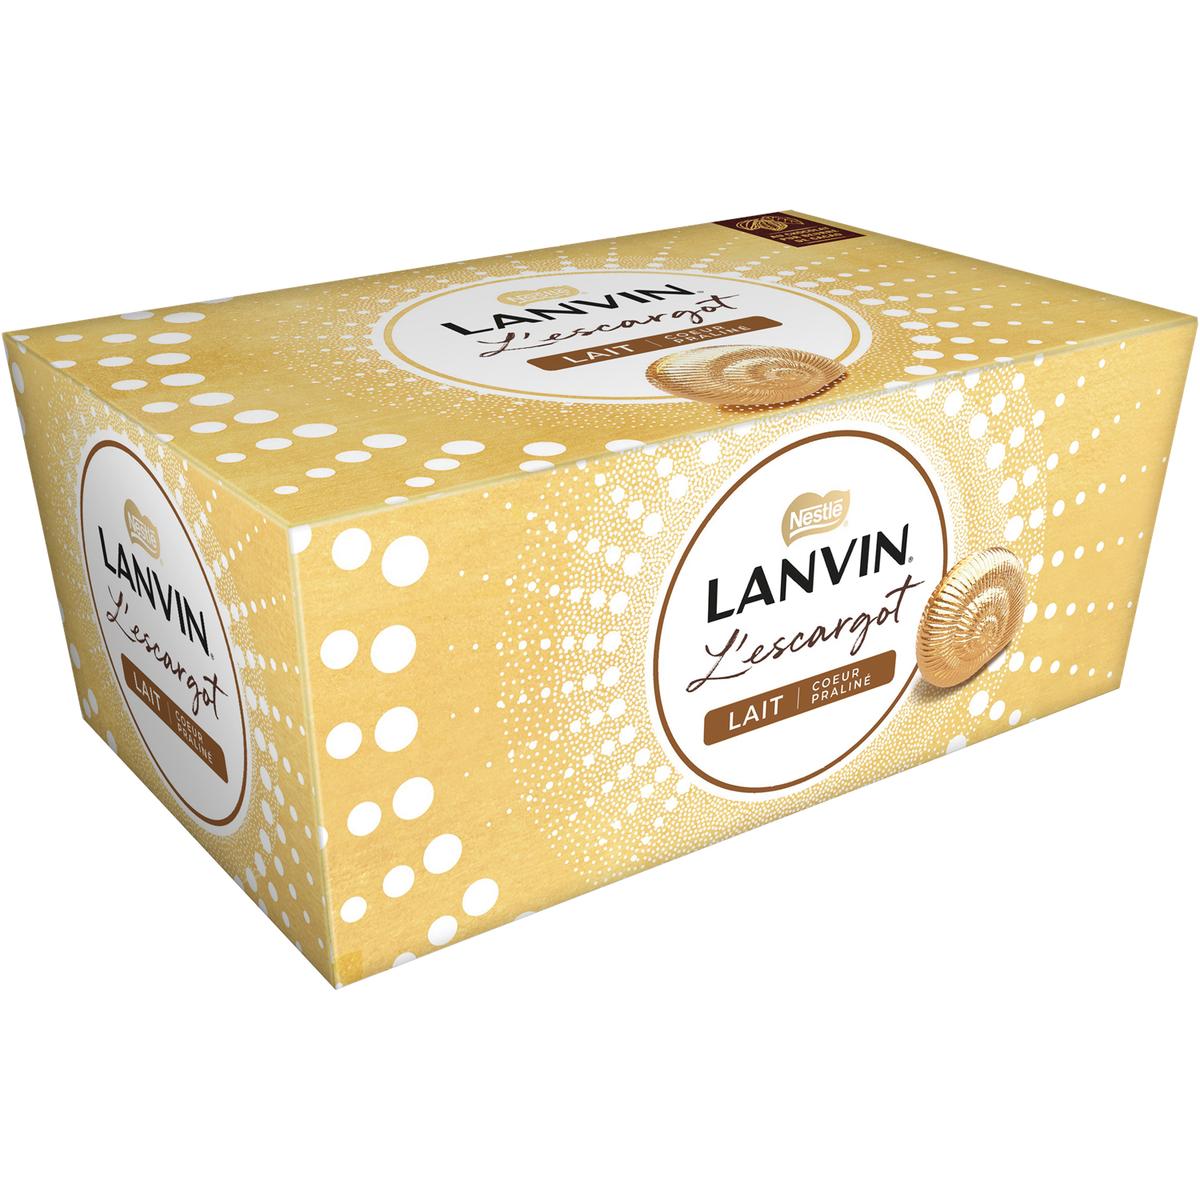 Lanvin mini escargots lait 140g (Nestle)